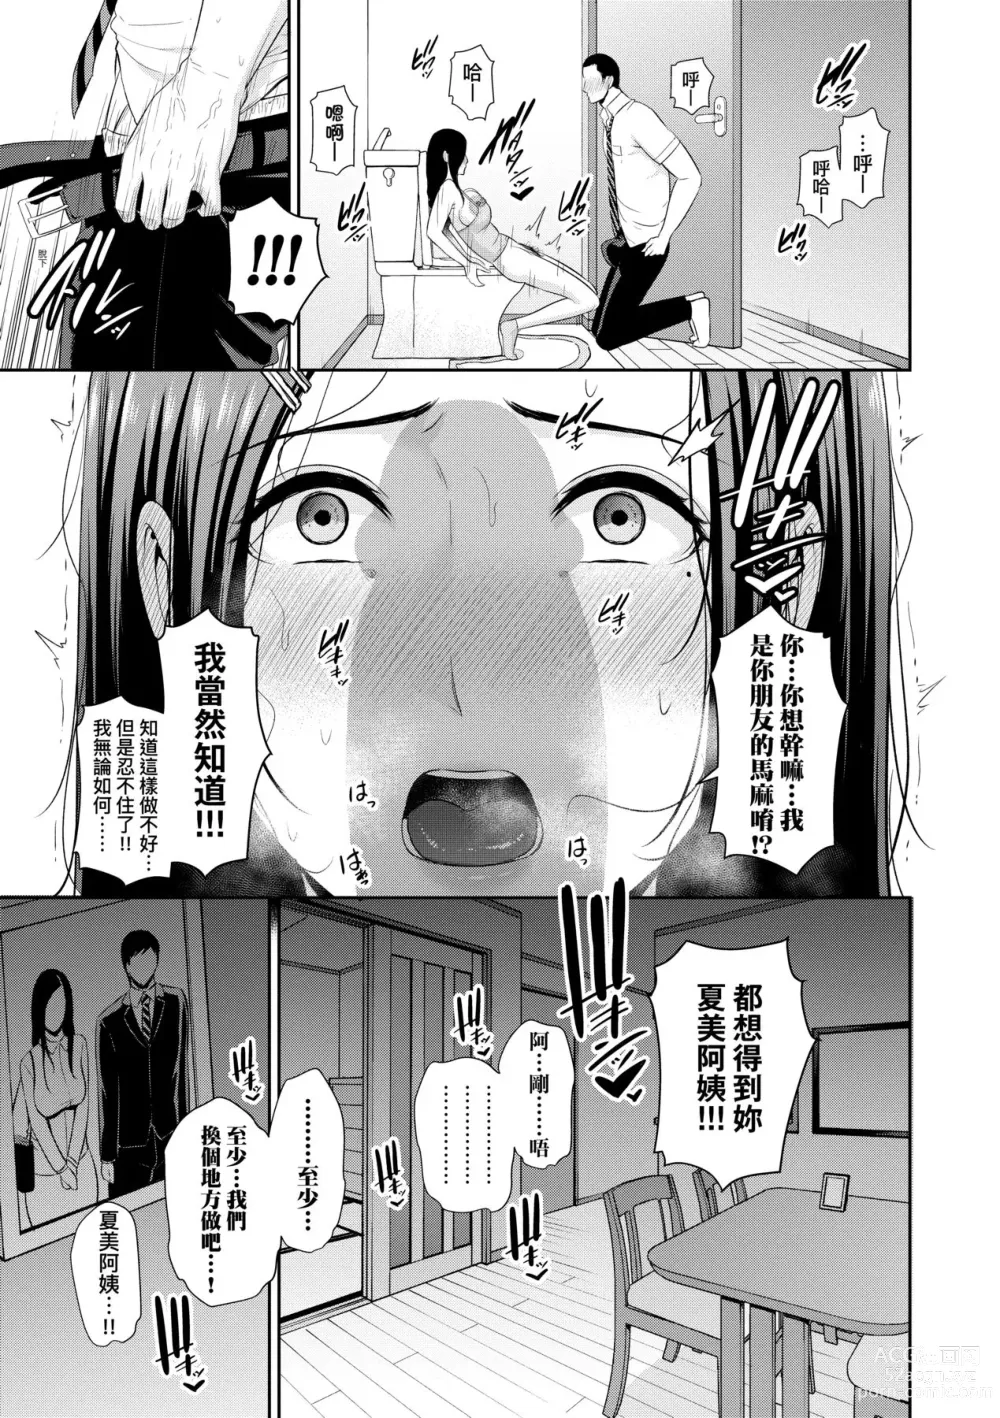 Page 18 of manga 朋友的馬麻 (decensored)